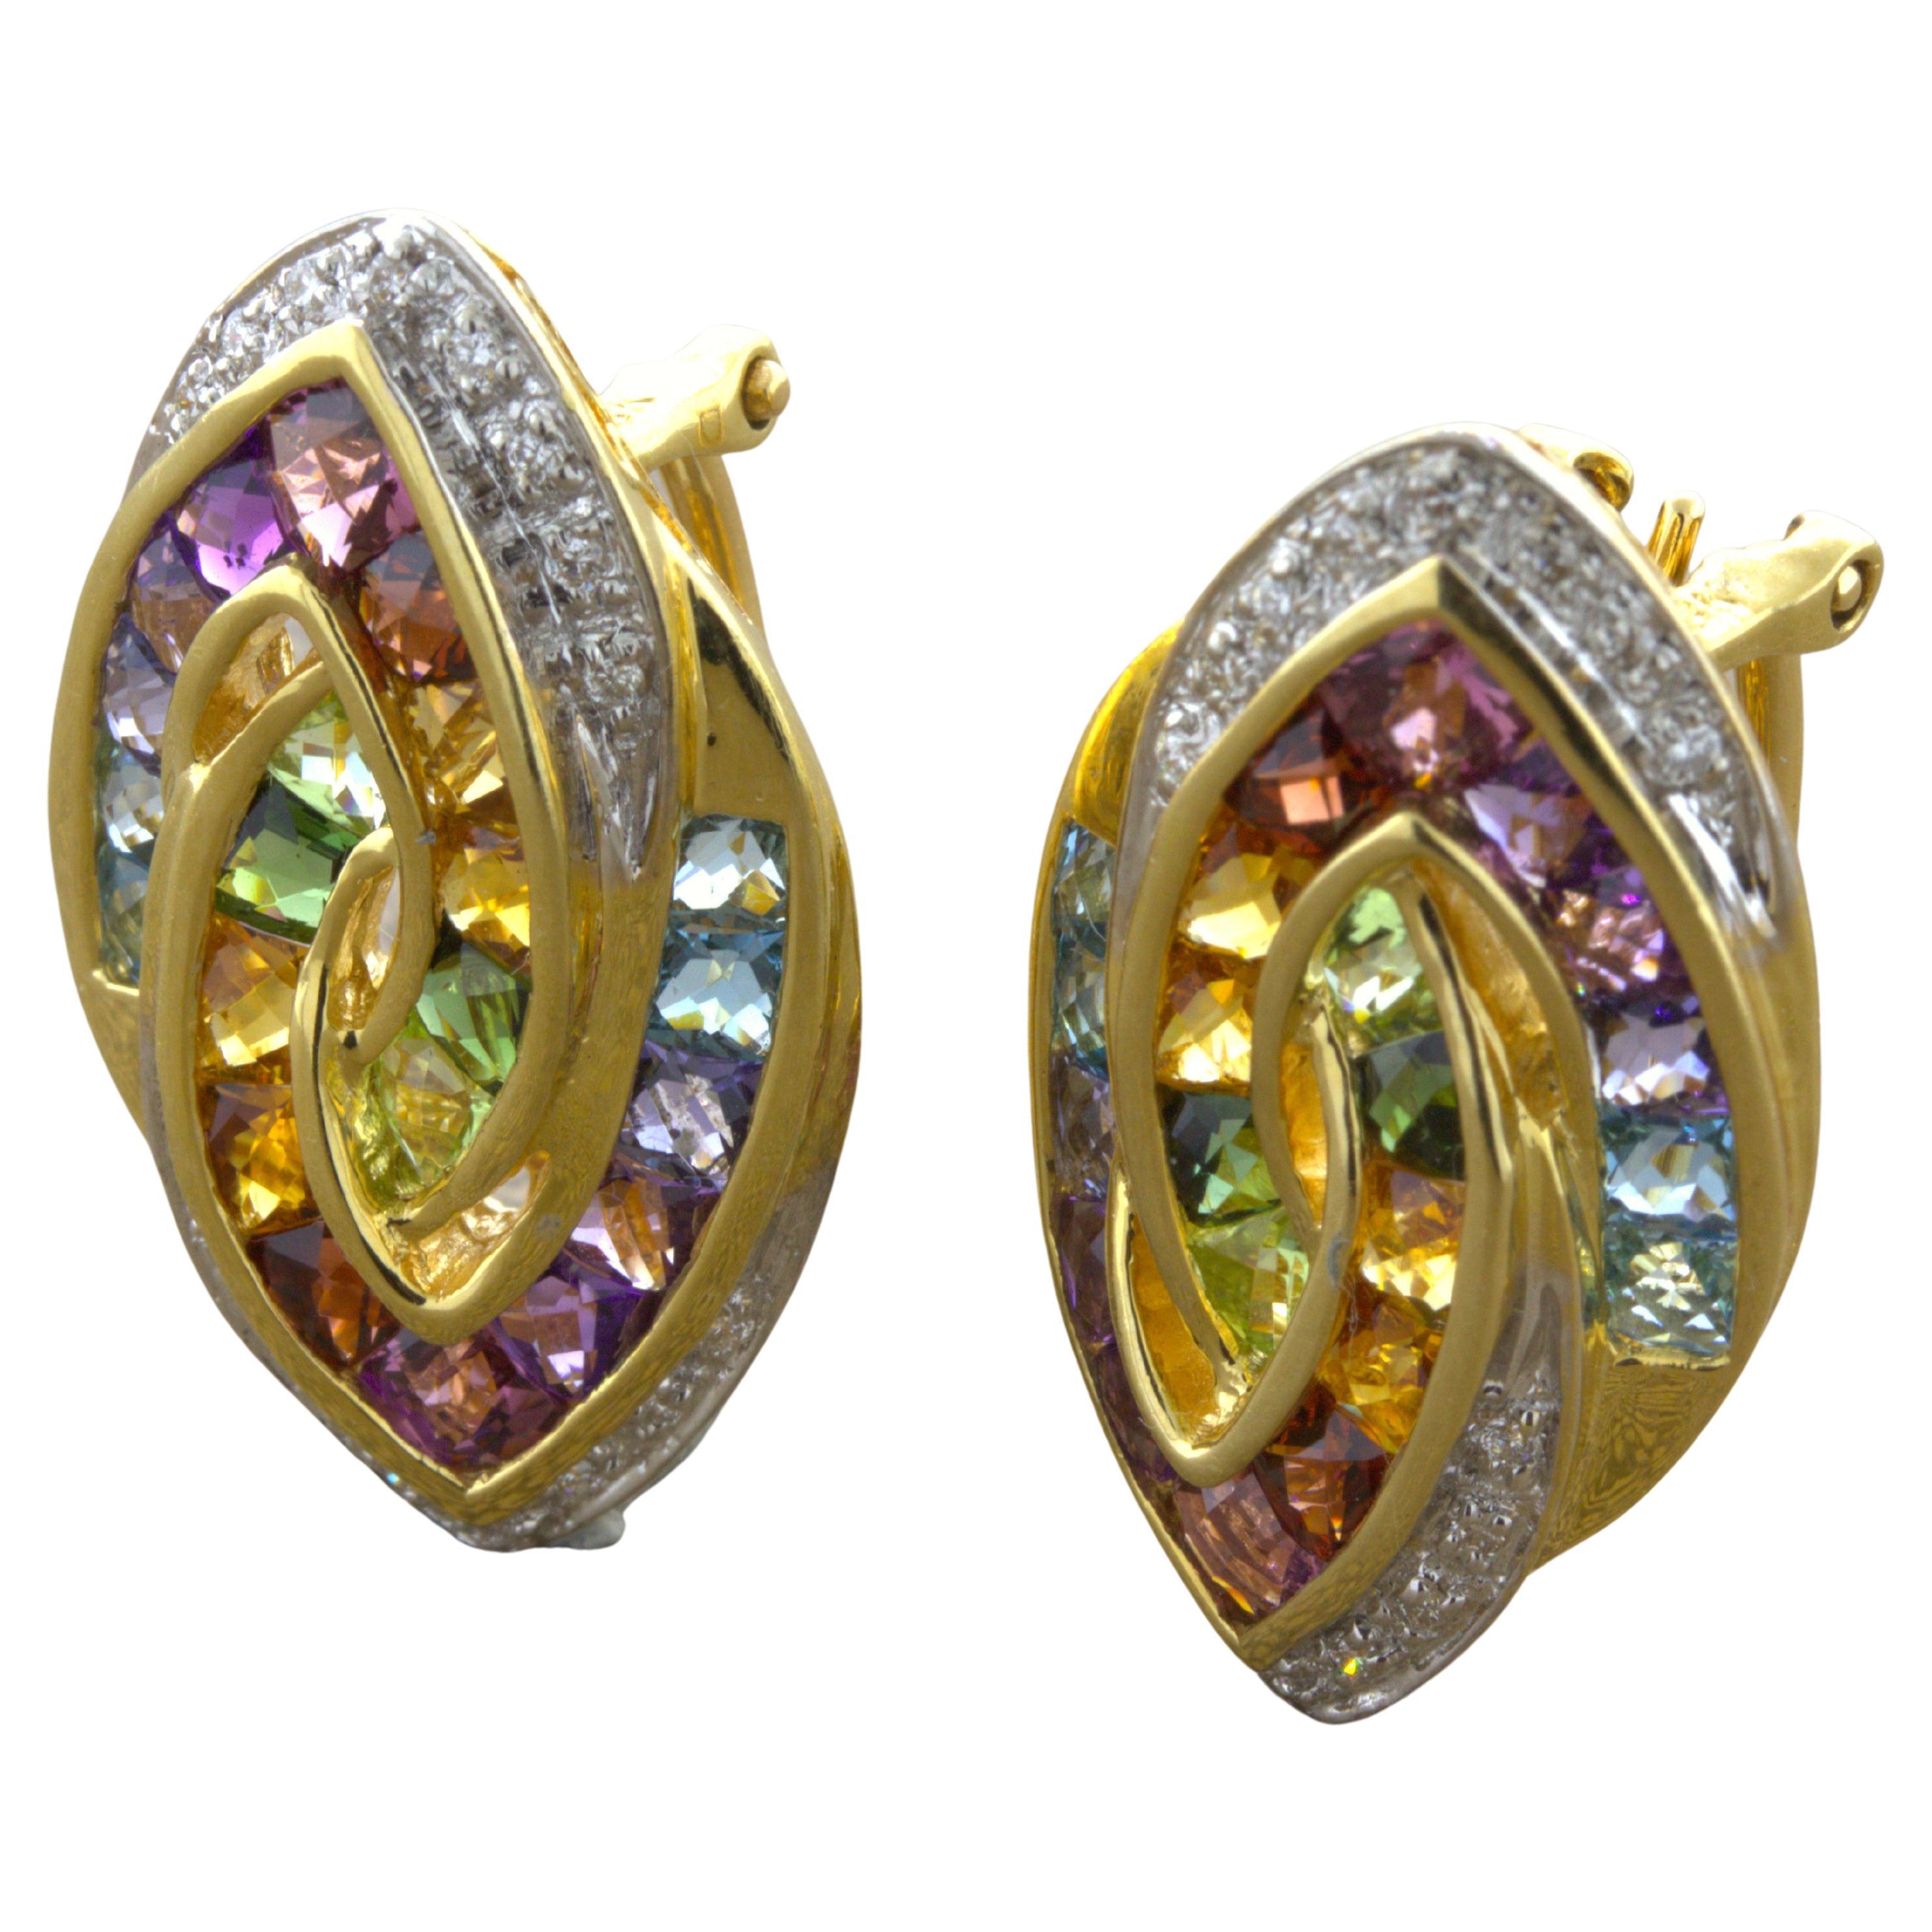 Bellarri Ohrringe aus 18 Karat Gelbgold mit mehrfarbigen Edelsteinen und Diamanten